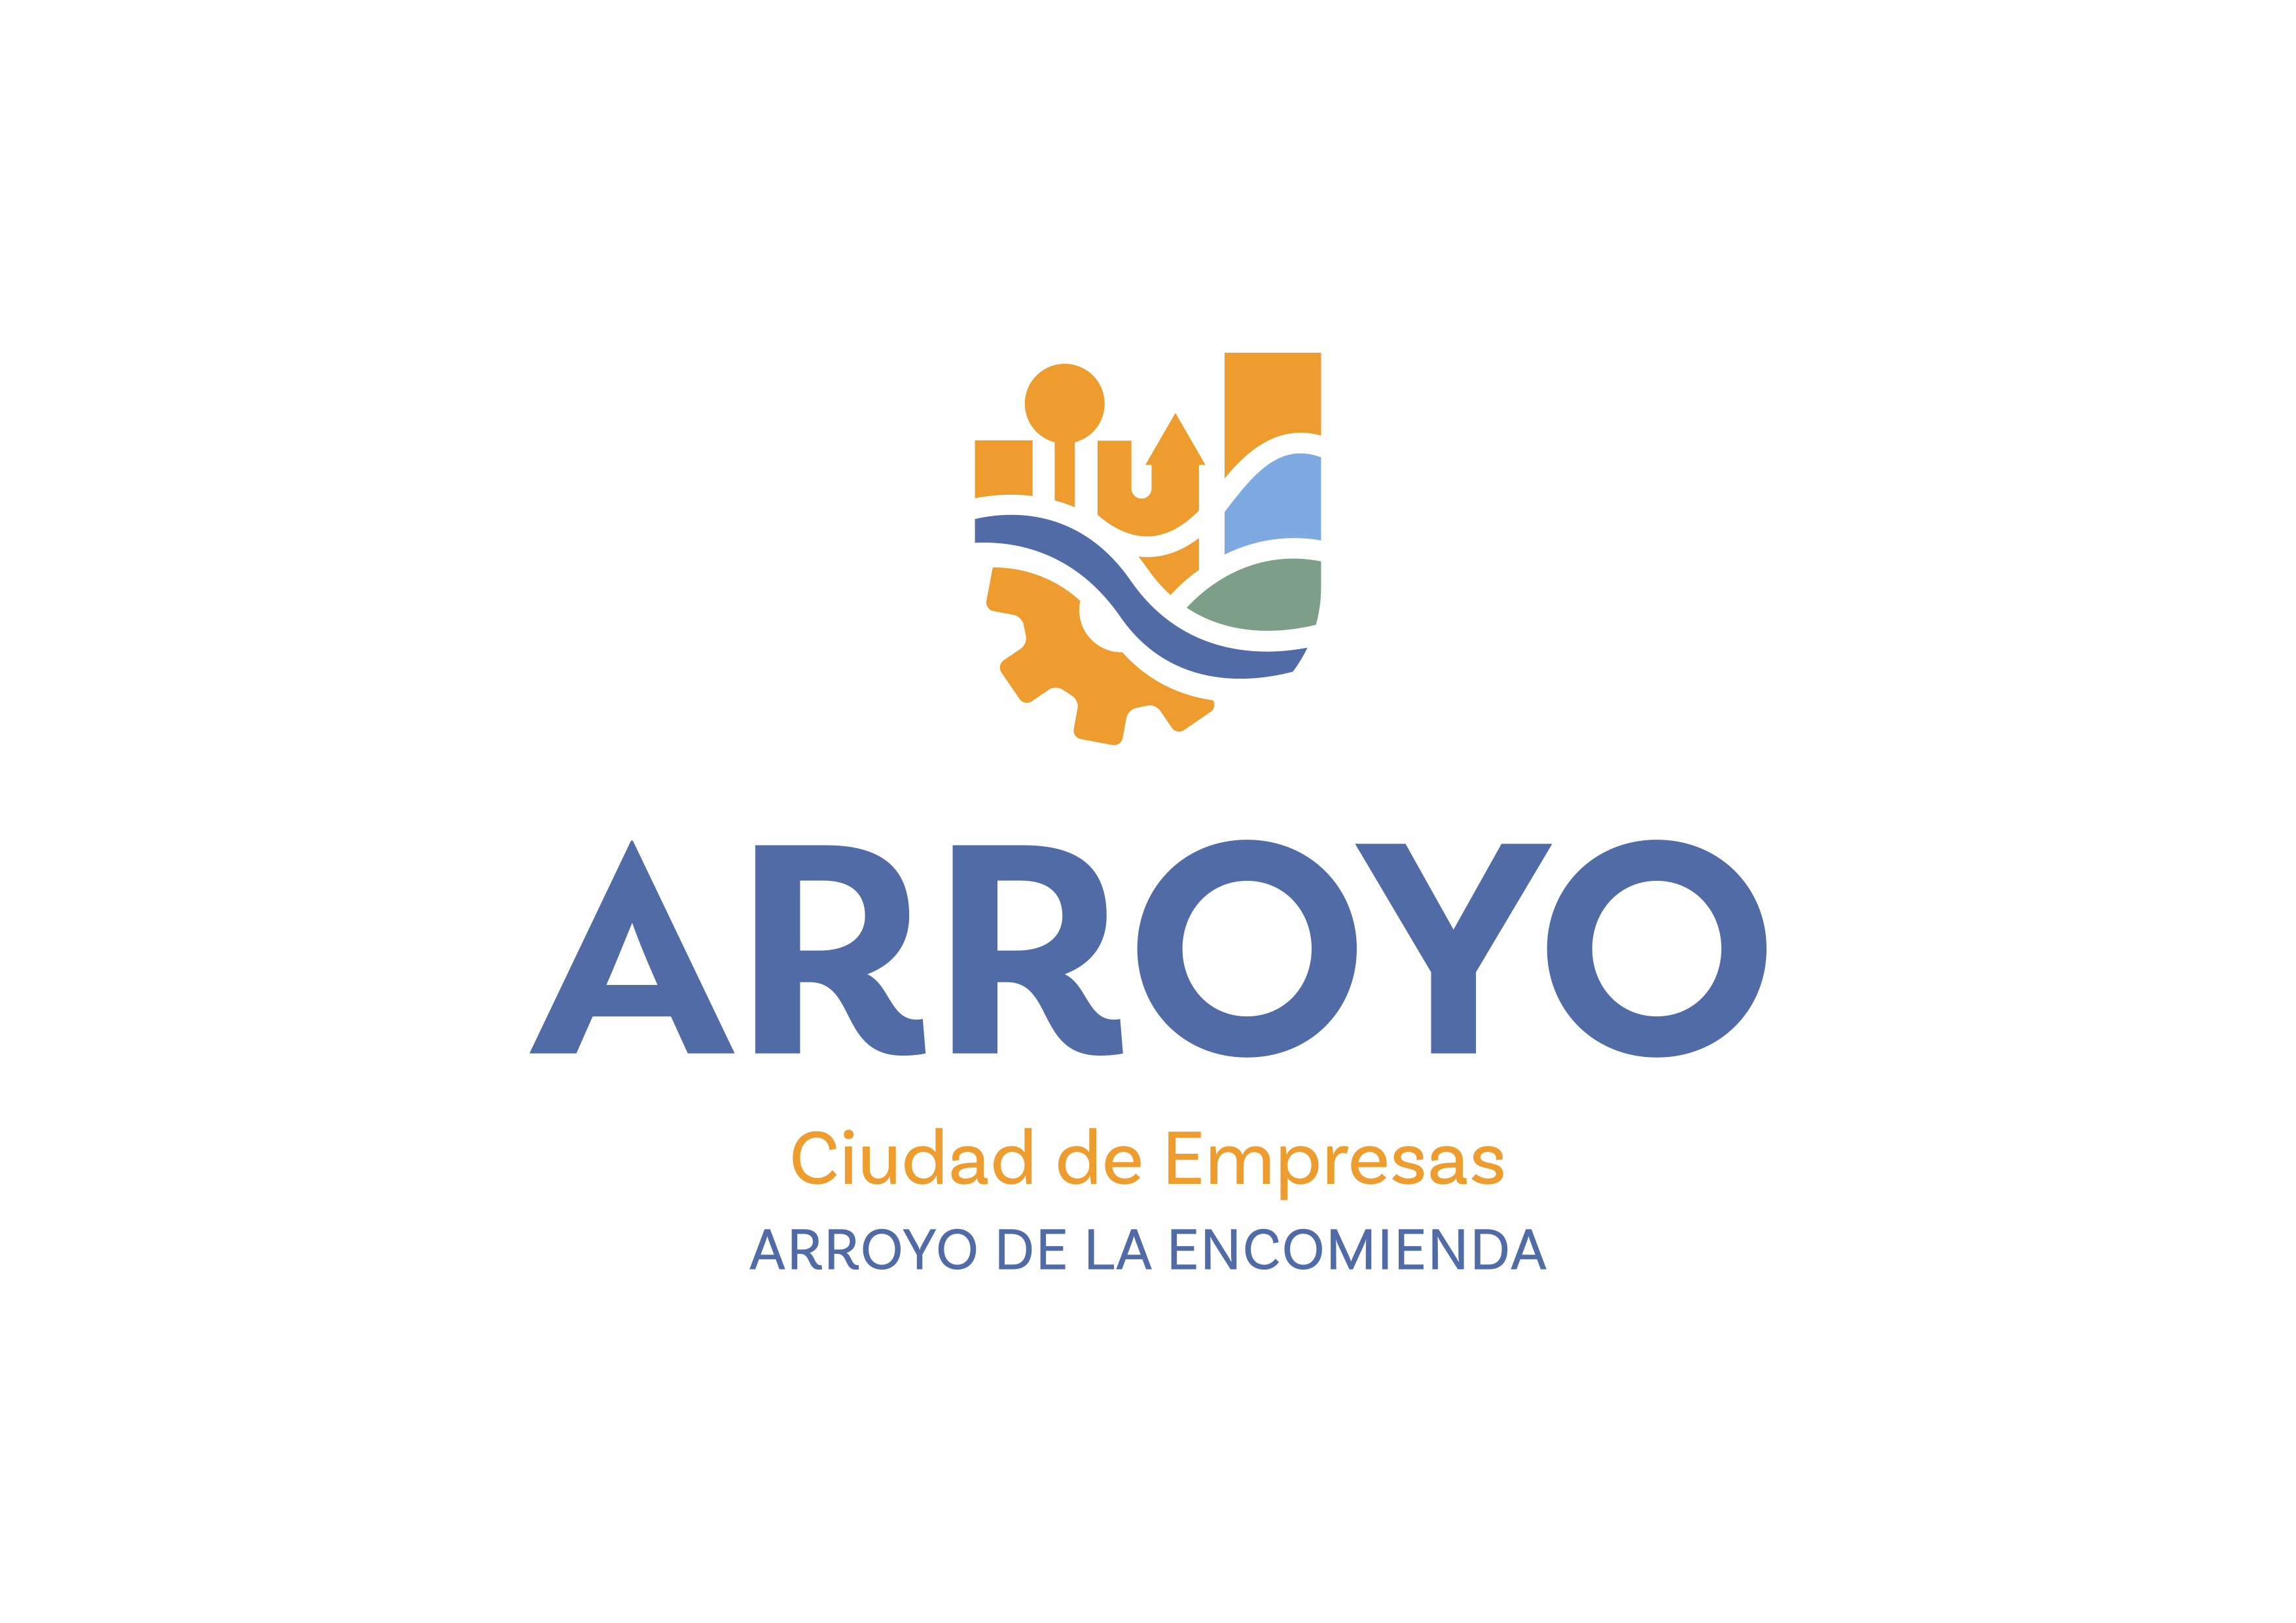 Arroyo ciudad de empresas